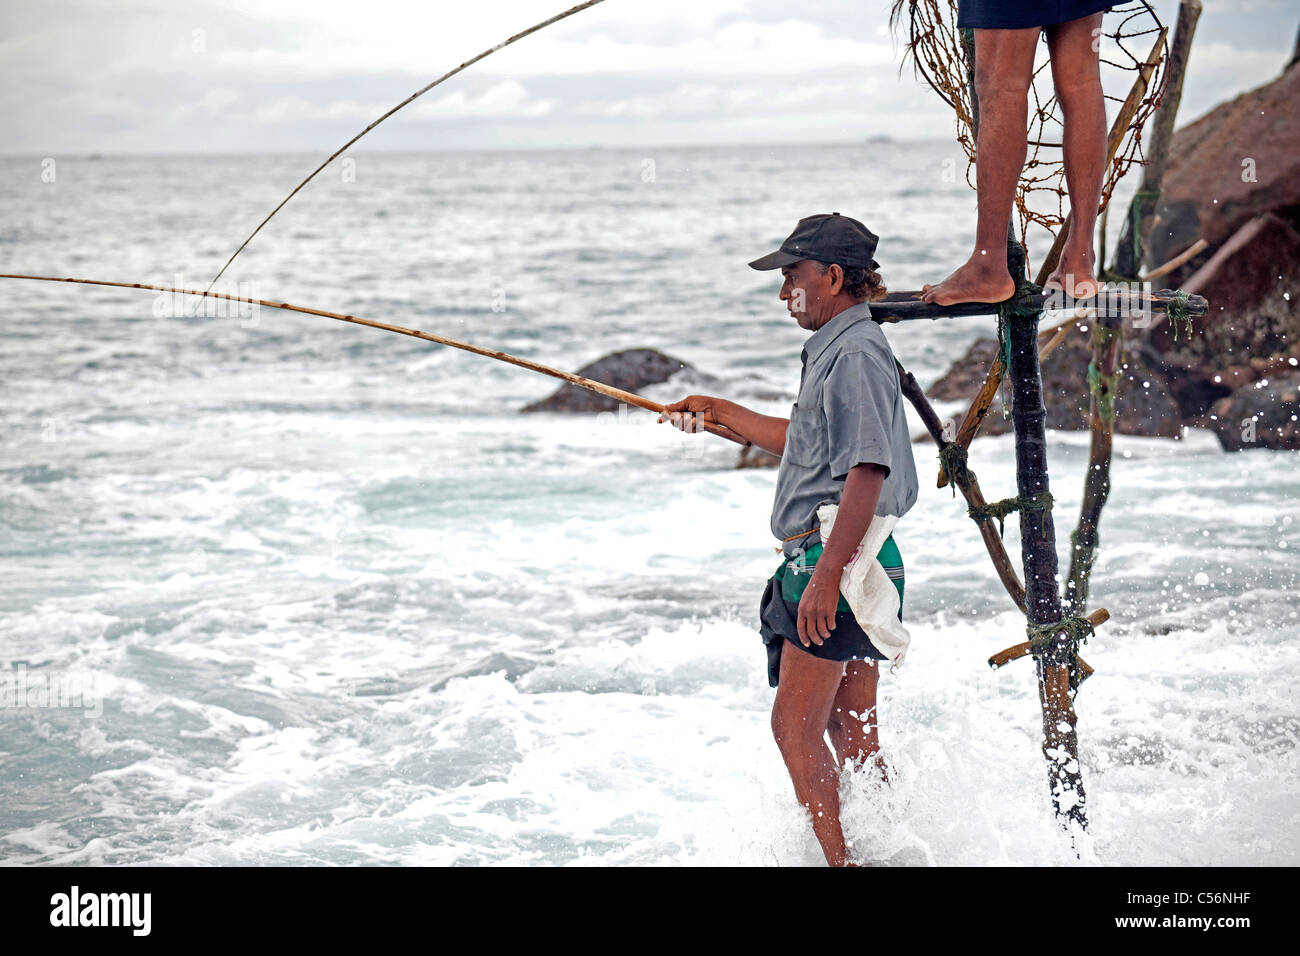 stilt fishing at the coast in Mirissa, Sri Lanka Stock Photo